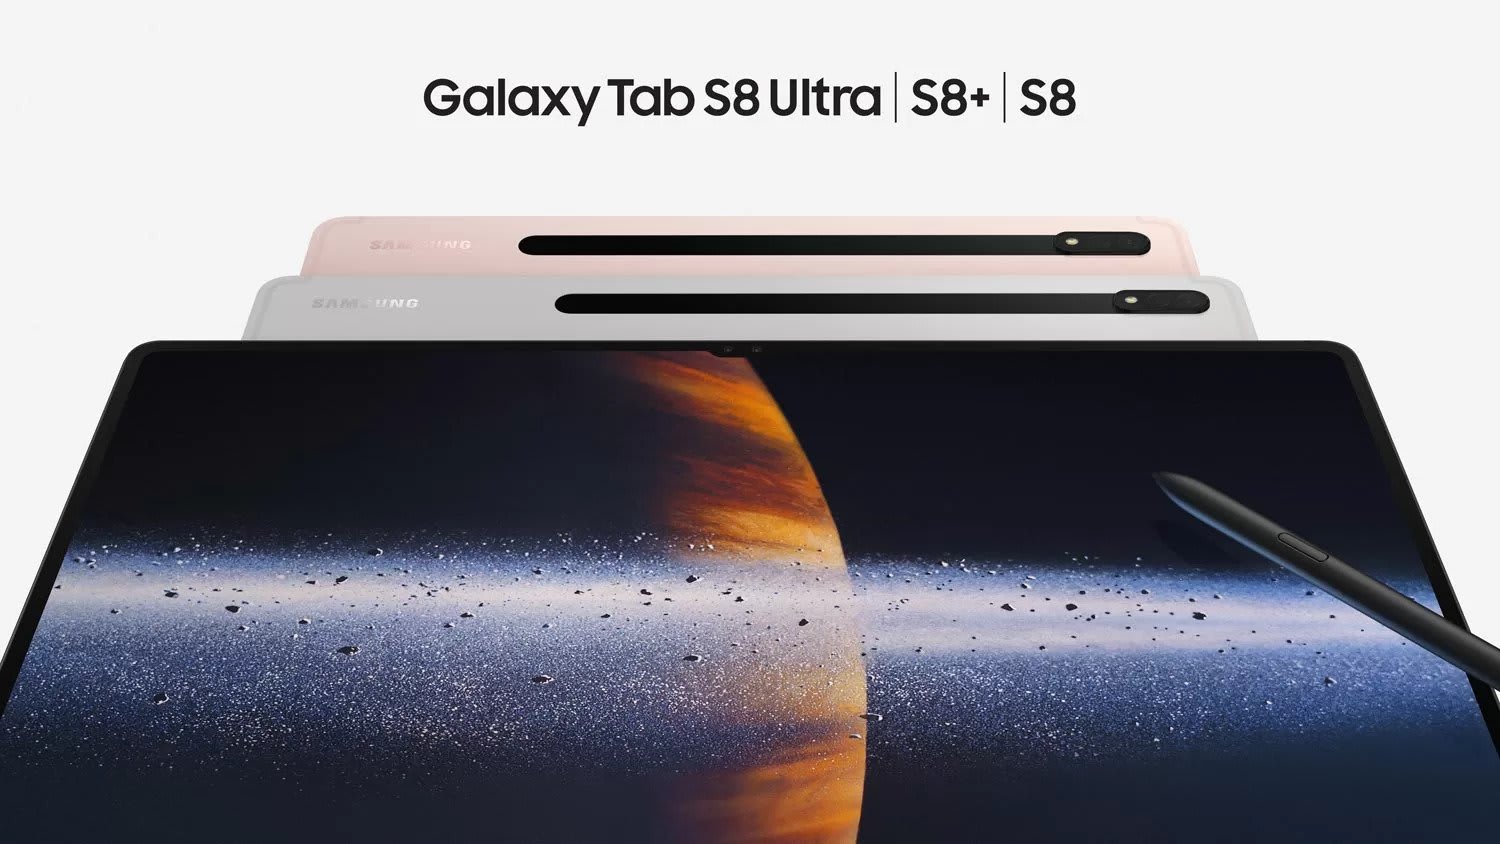 Galaxy Tab S8 Ultra S8+ S8.jpeg